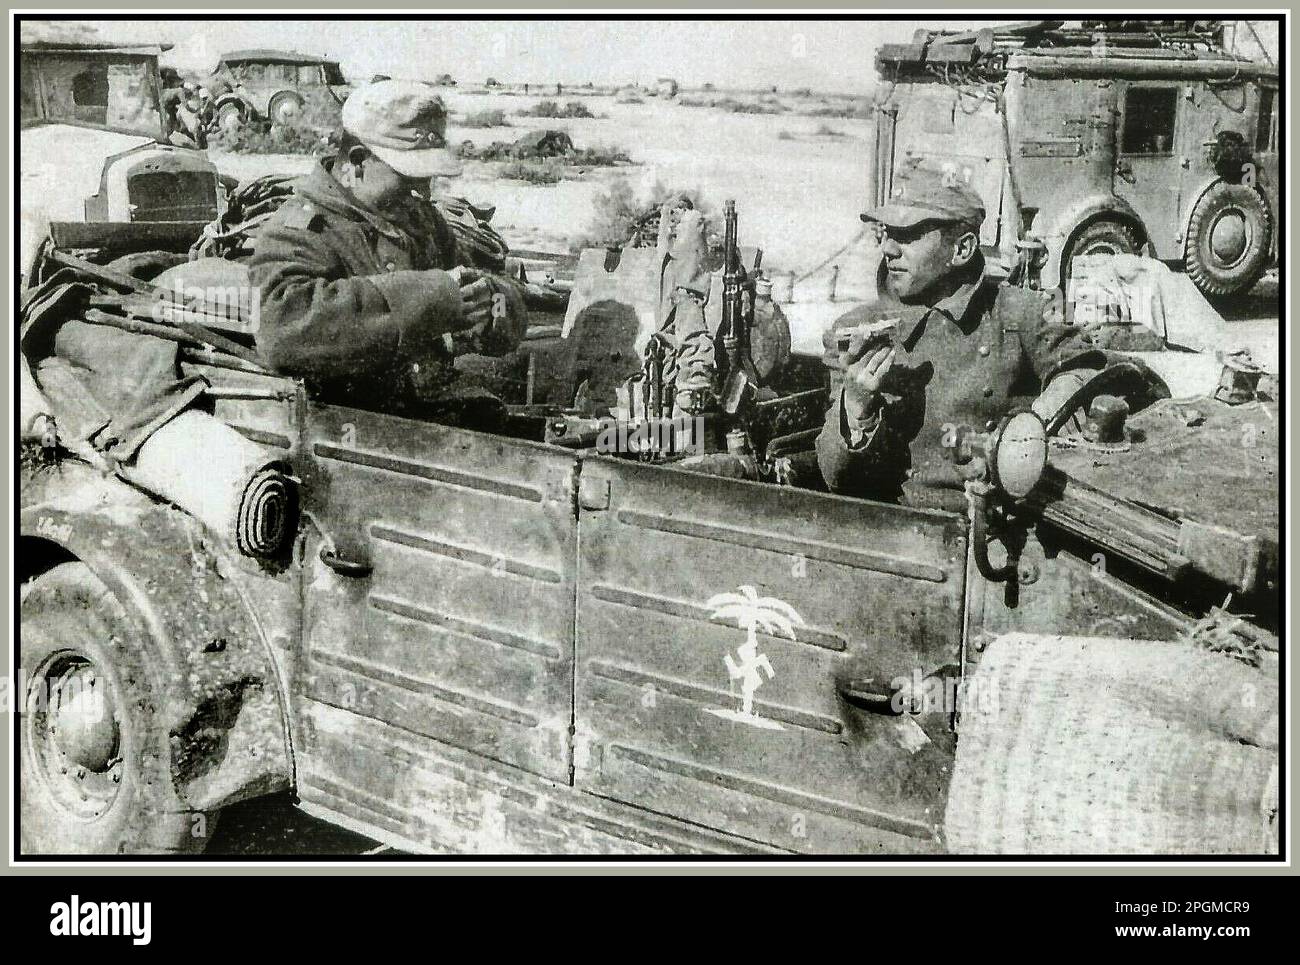 Afrika Corps WW2 Nordafrika 1940er Nazi Deutschland 21. Panzerdivision unter Desert Fox Field Marshall Erwin Rommel, Wehrmachtssoldaten essen Rationen in ihrem Kubelwagon. "DAK" Nazi-Swastika-Schablone an der Tür. 2. Weltkrieg 2. Weltkrieg Stockfoto